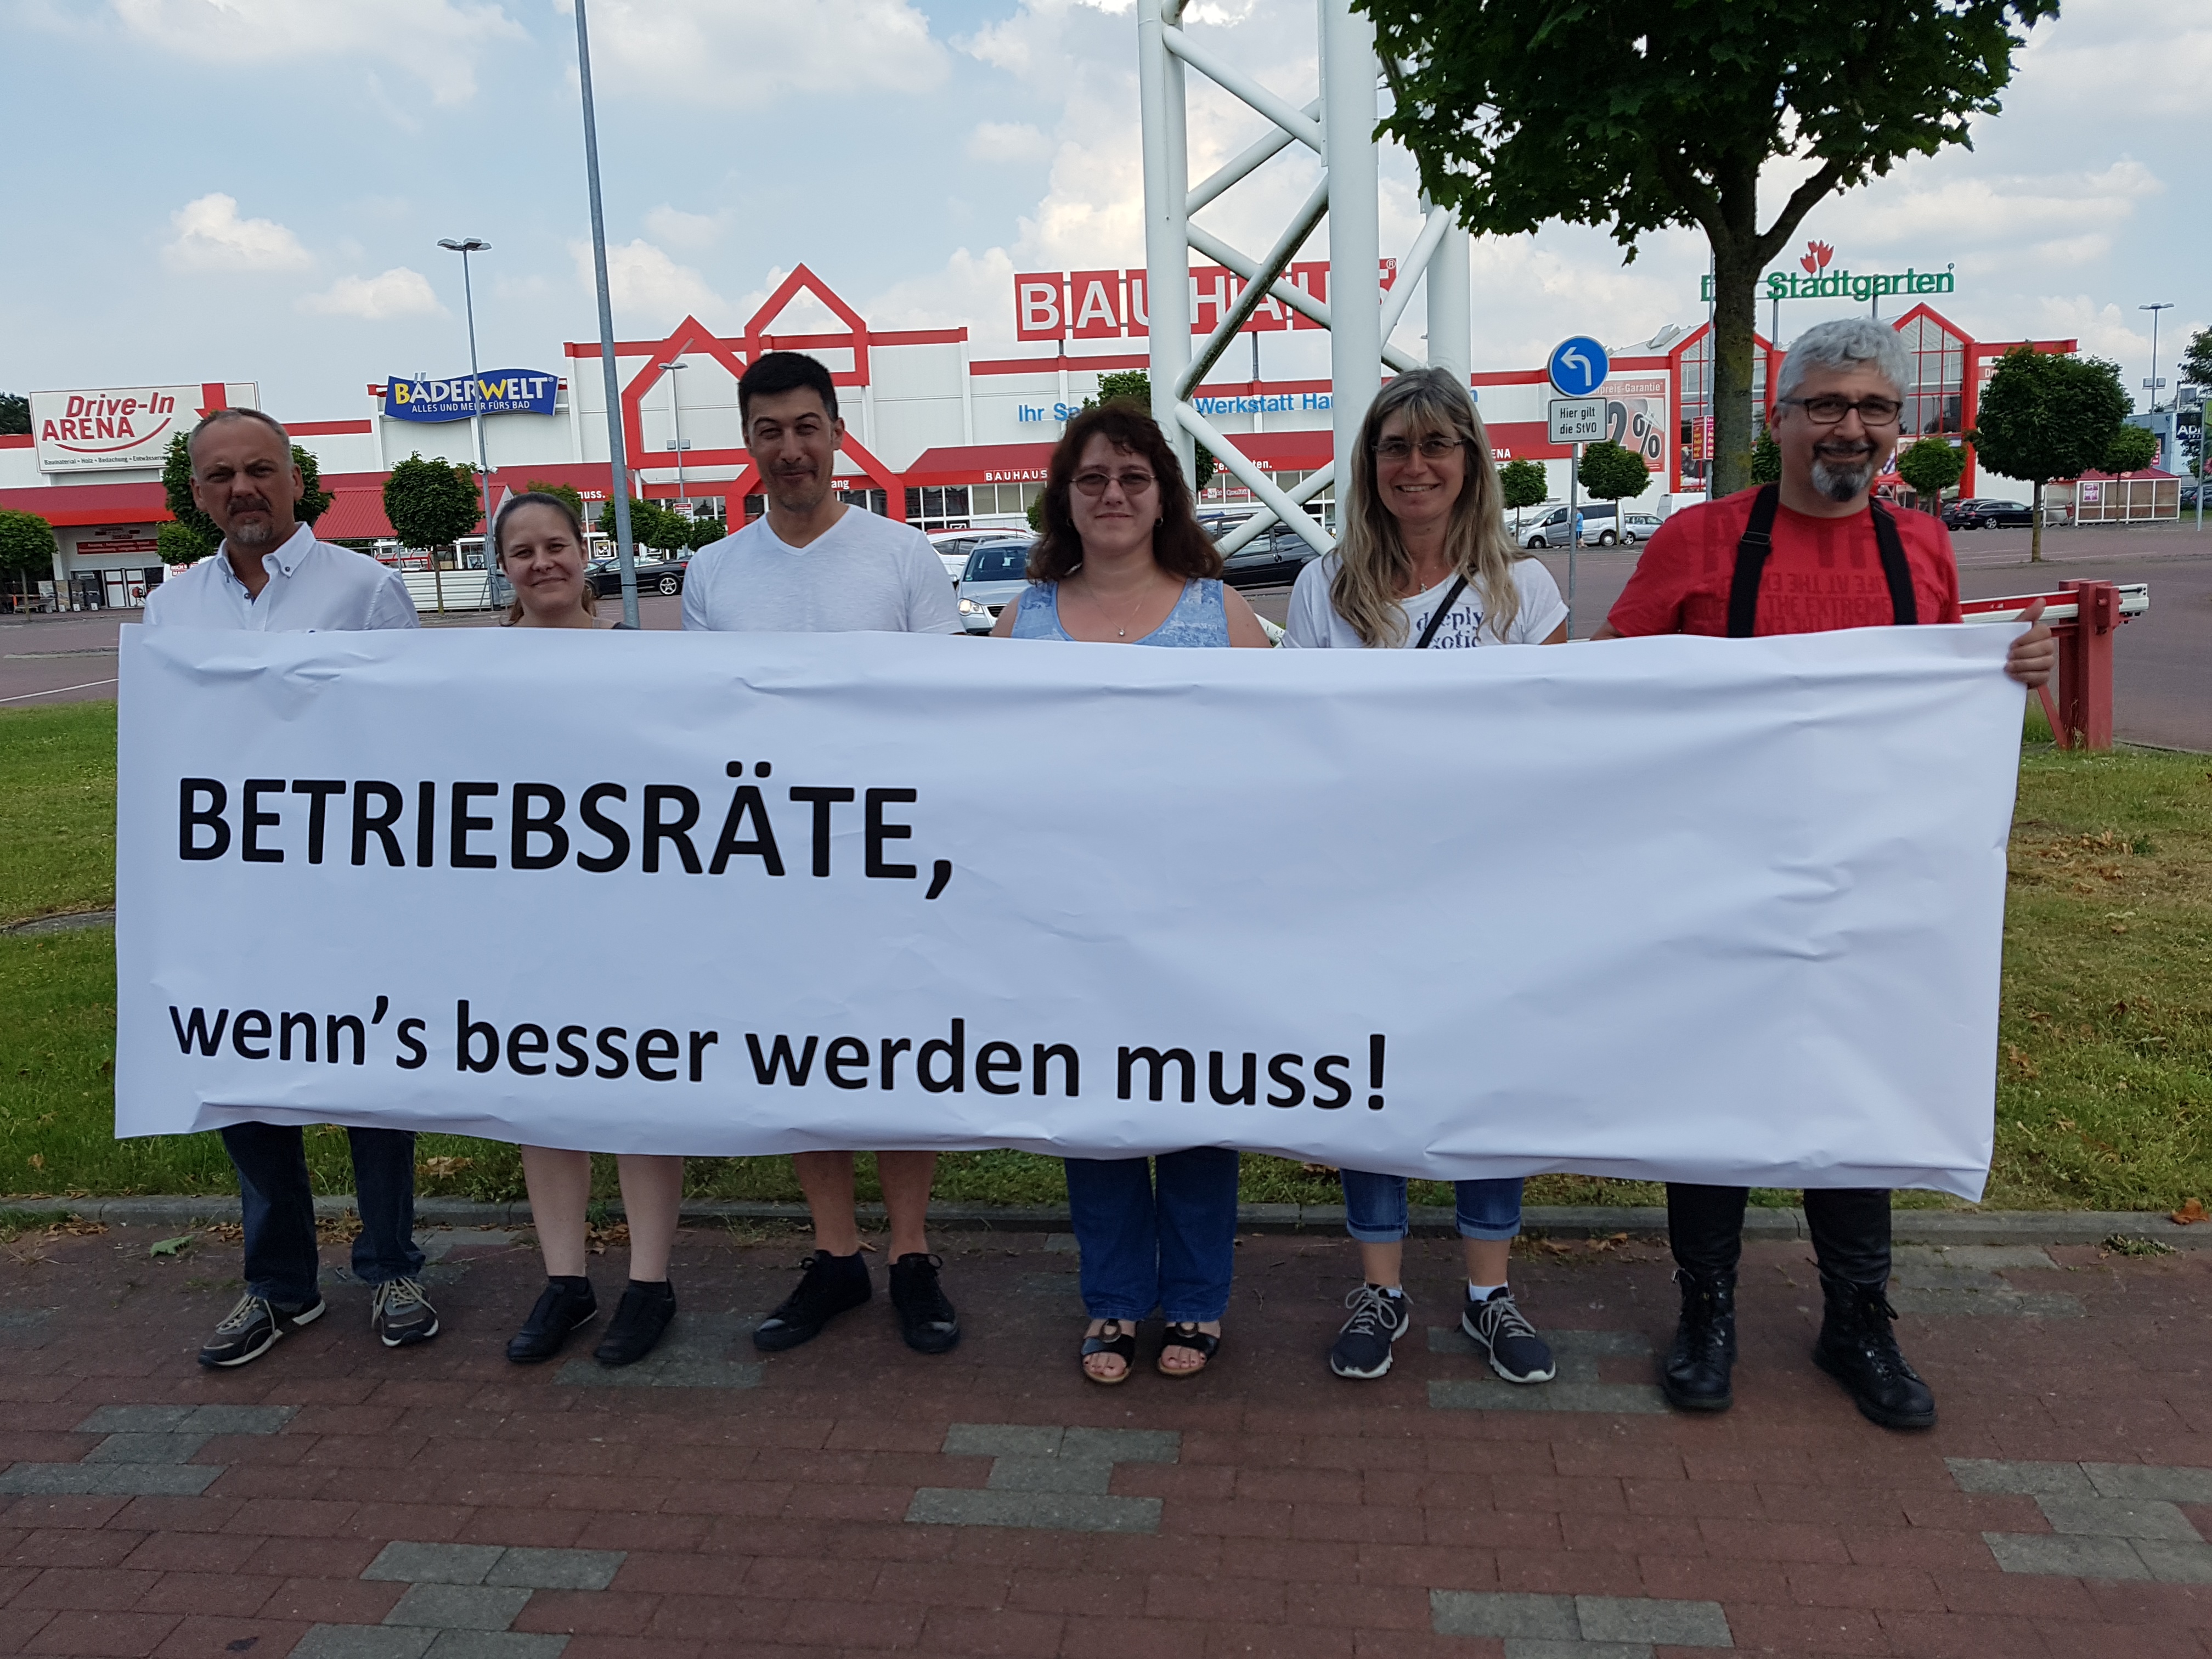 Bauhaus Krefeld Muss Entlassene Betriebsratin Wieder Einstellen Work Watch